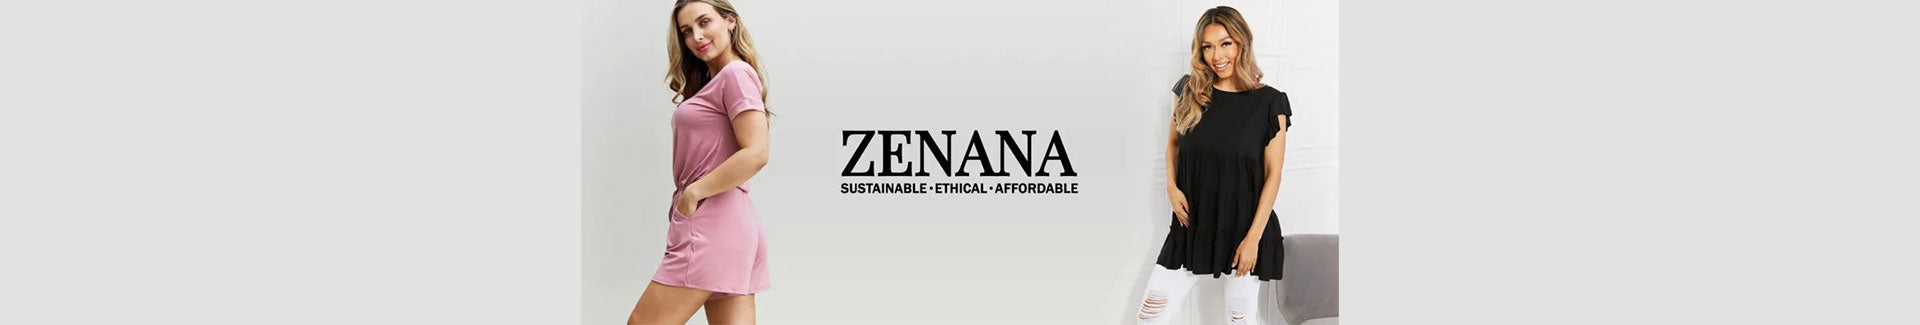 Buy Stylish & Affordable Zenana Clothing For Women - Daily Fashion